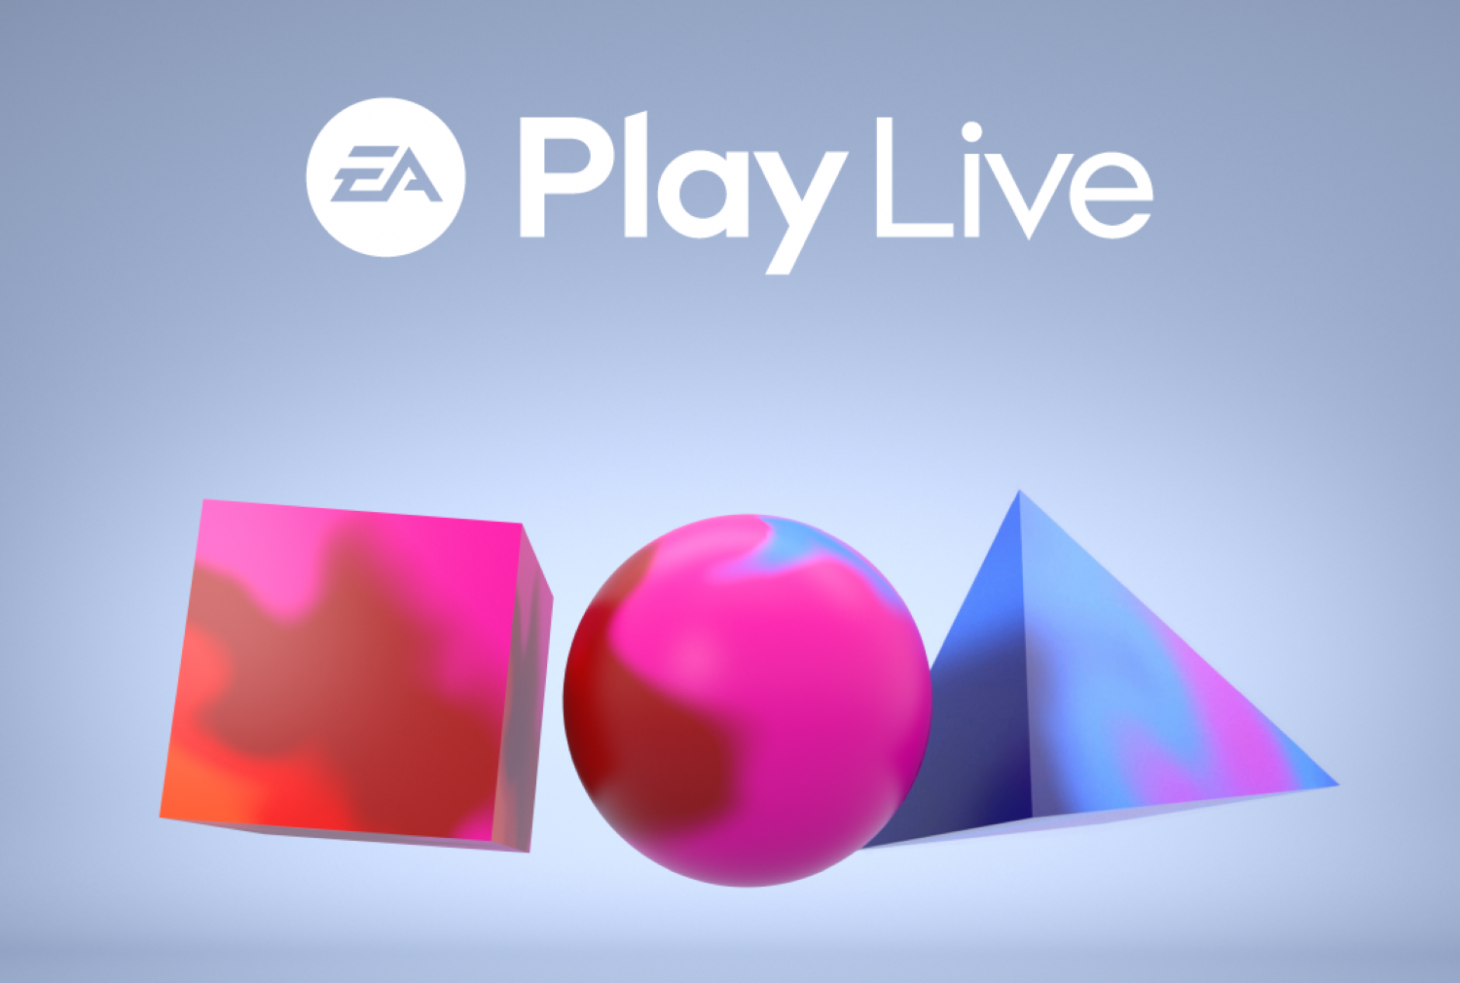 EA Play Live 2021 fecha